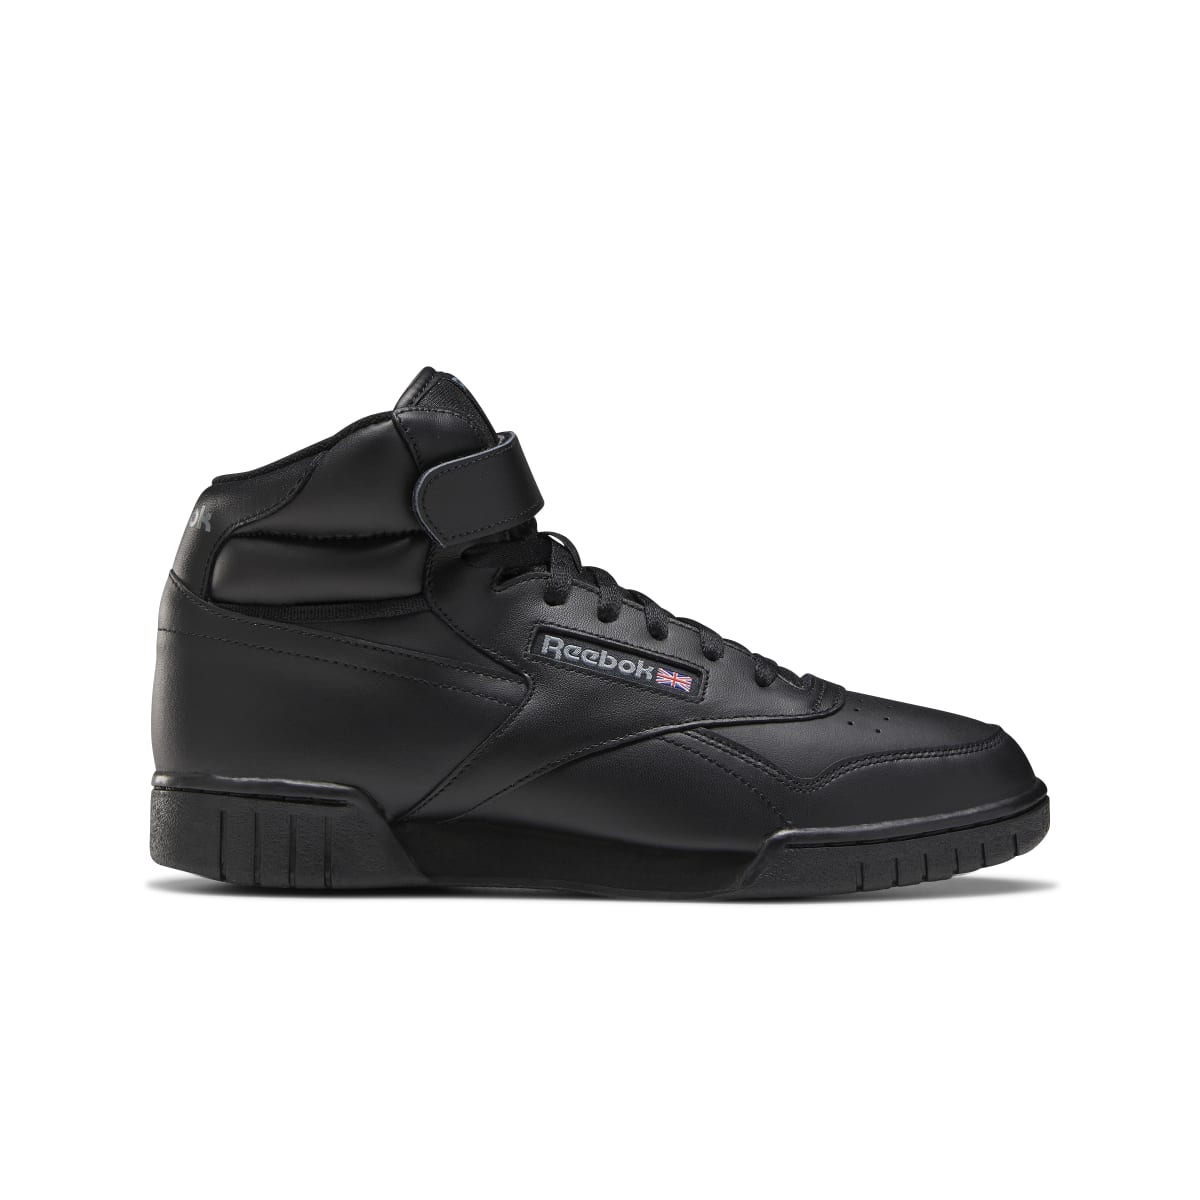 REEBOK EX-O-FIT HI MN'S (Medium) Black Leather Lifestyle – www.kicks-footwear.com